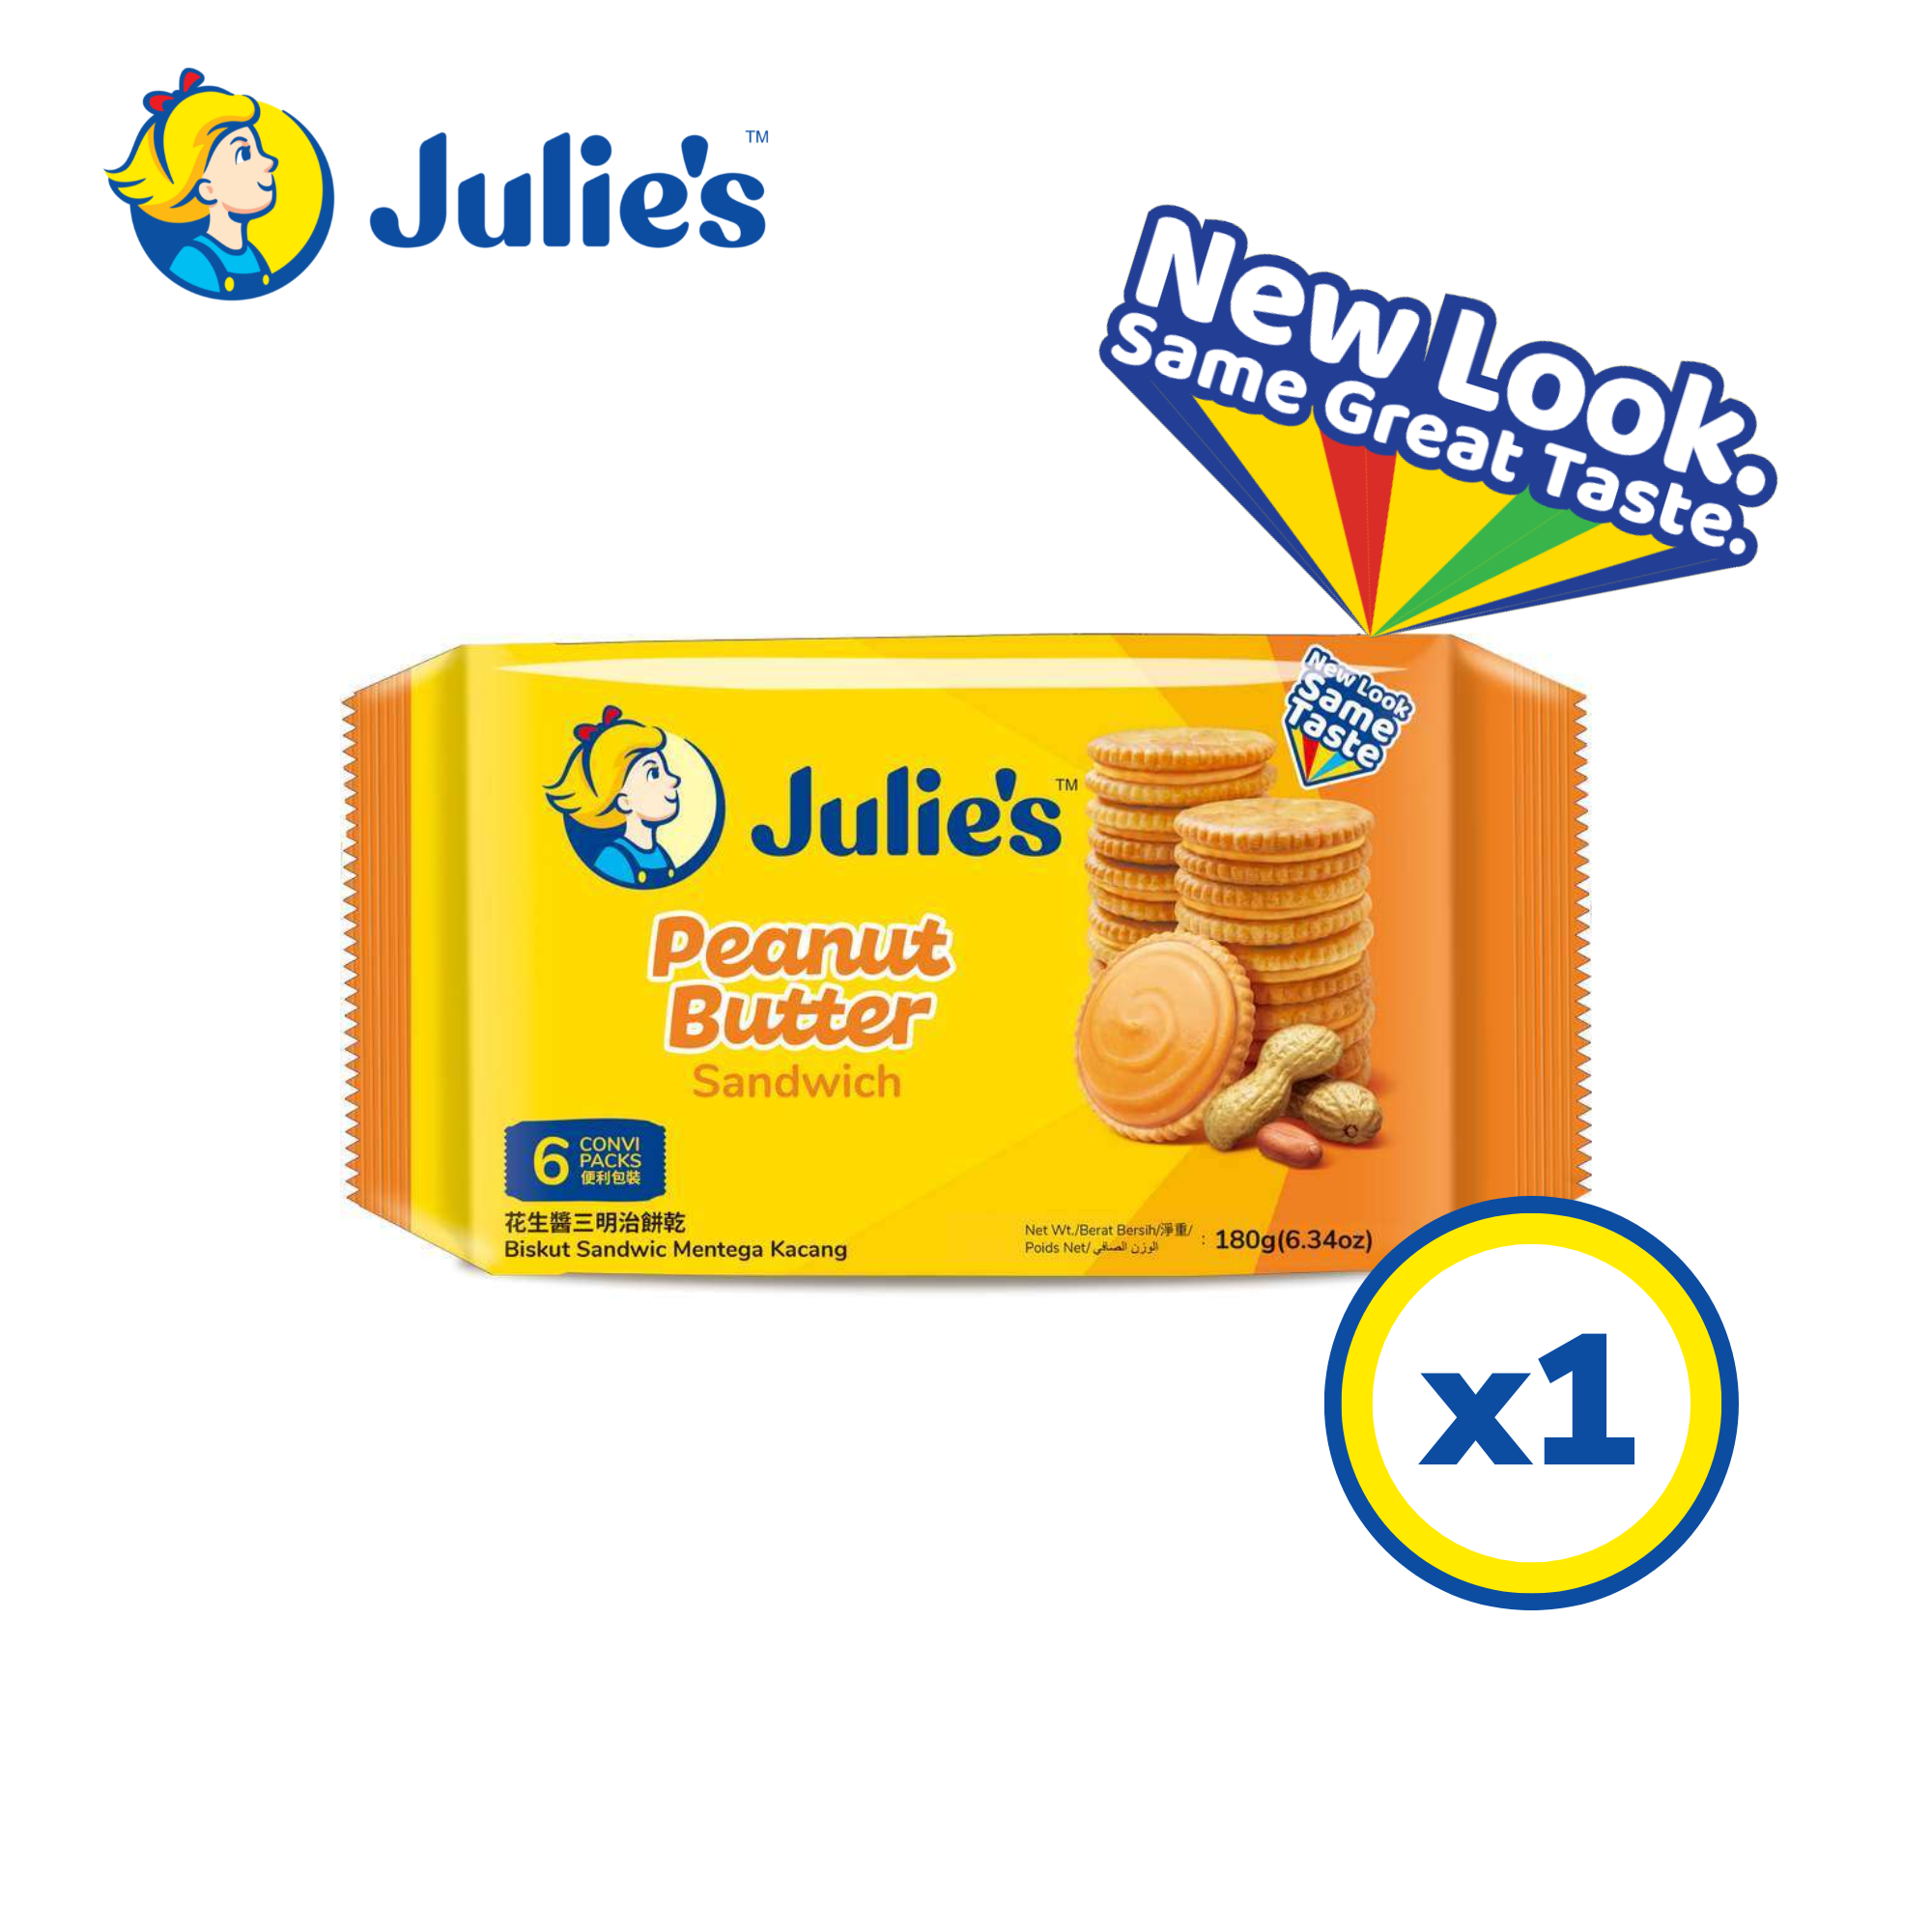 Julie's Peanut Butter Sandwich 180g x 1 pack